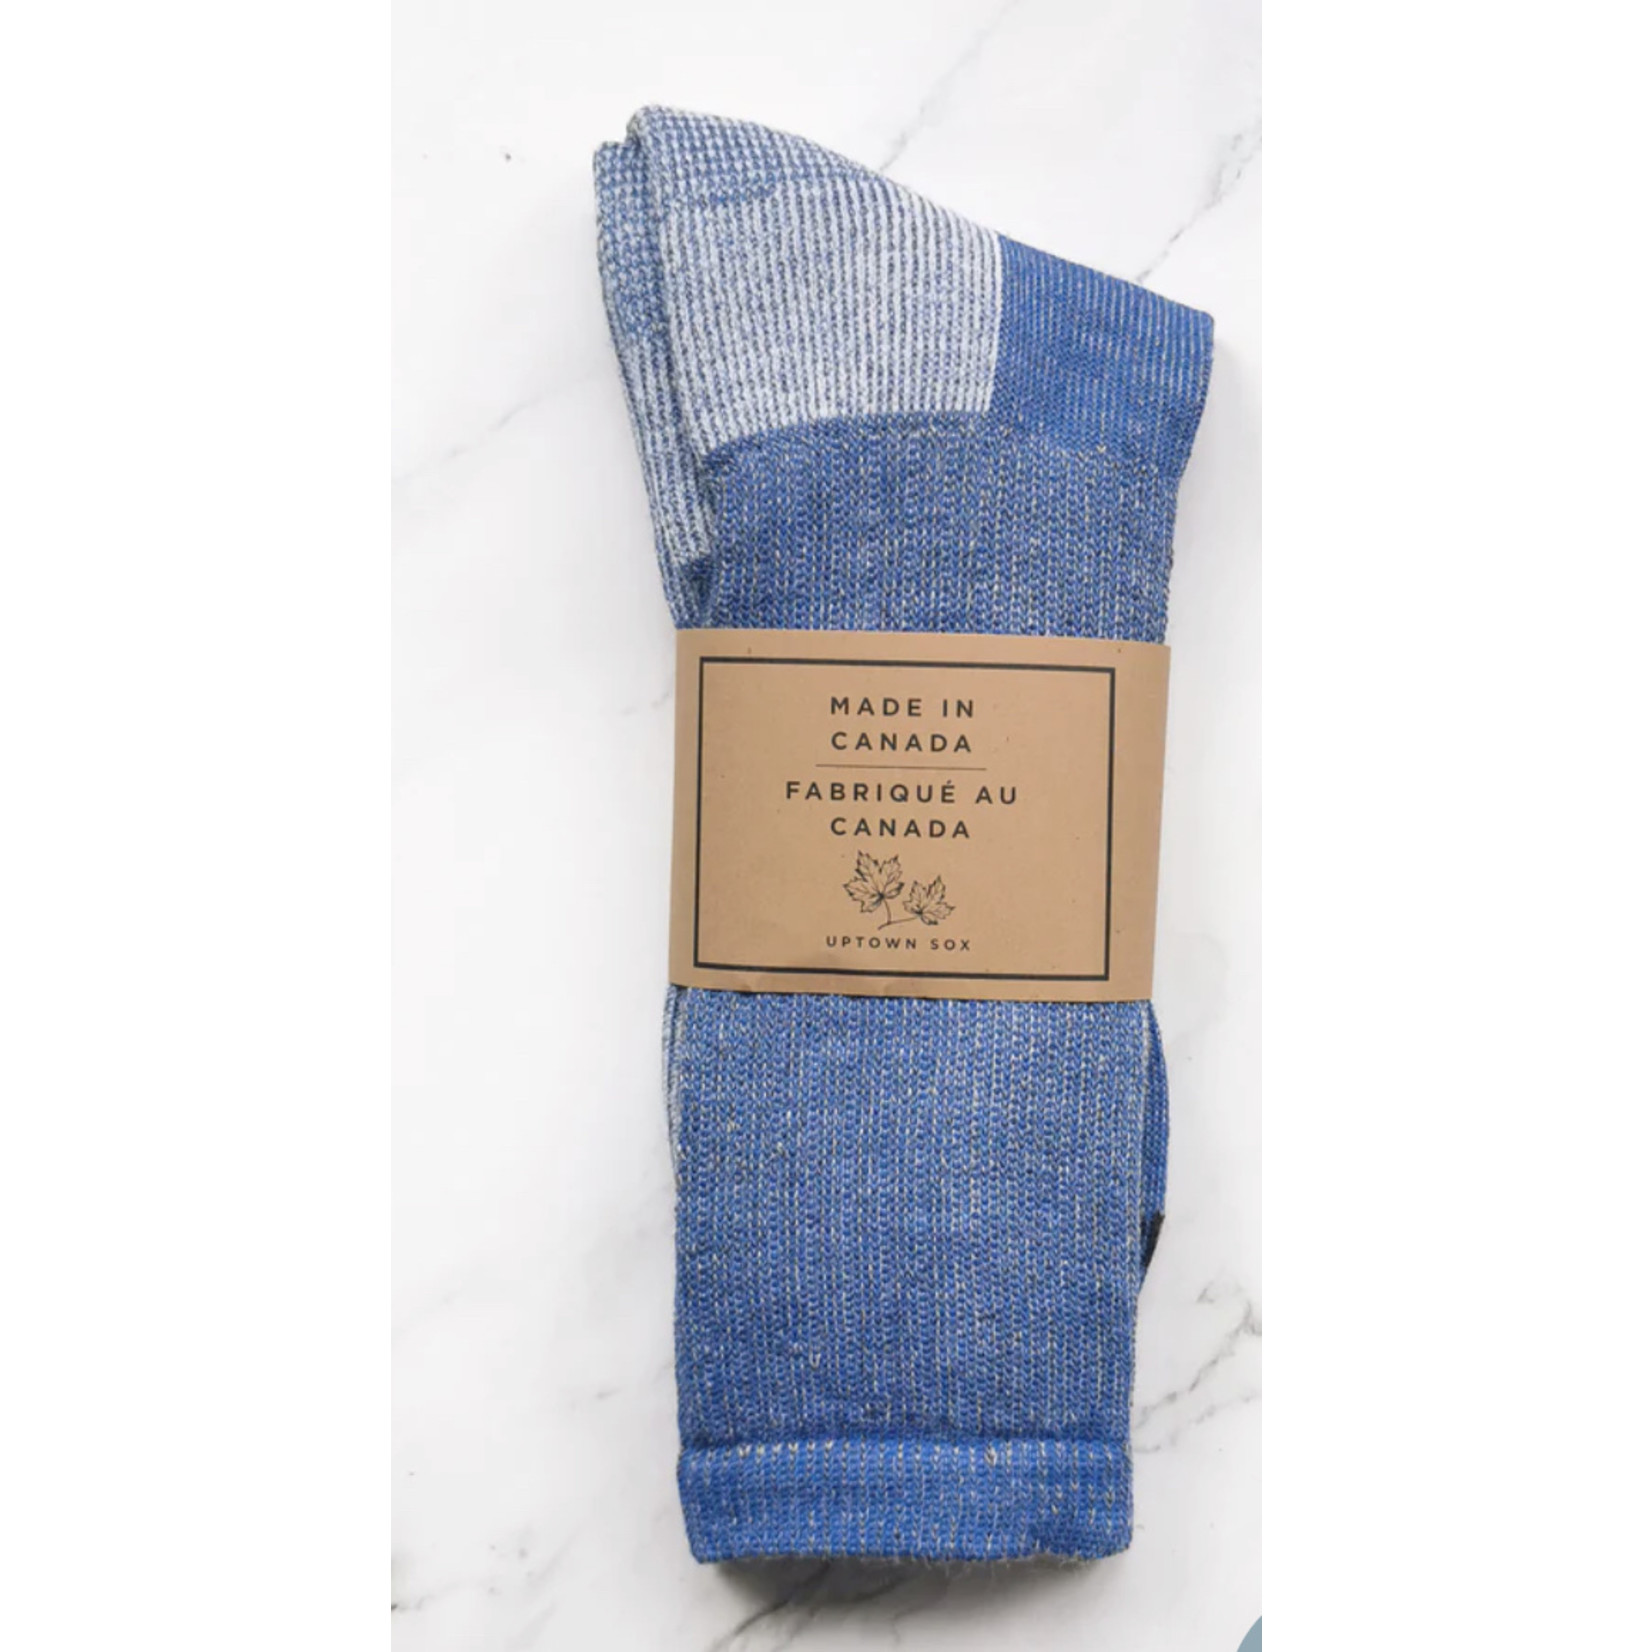 Uptown Sox Merino Wool Socks Blue